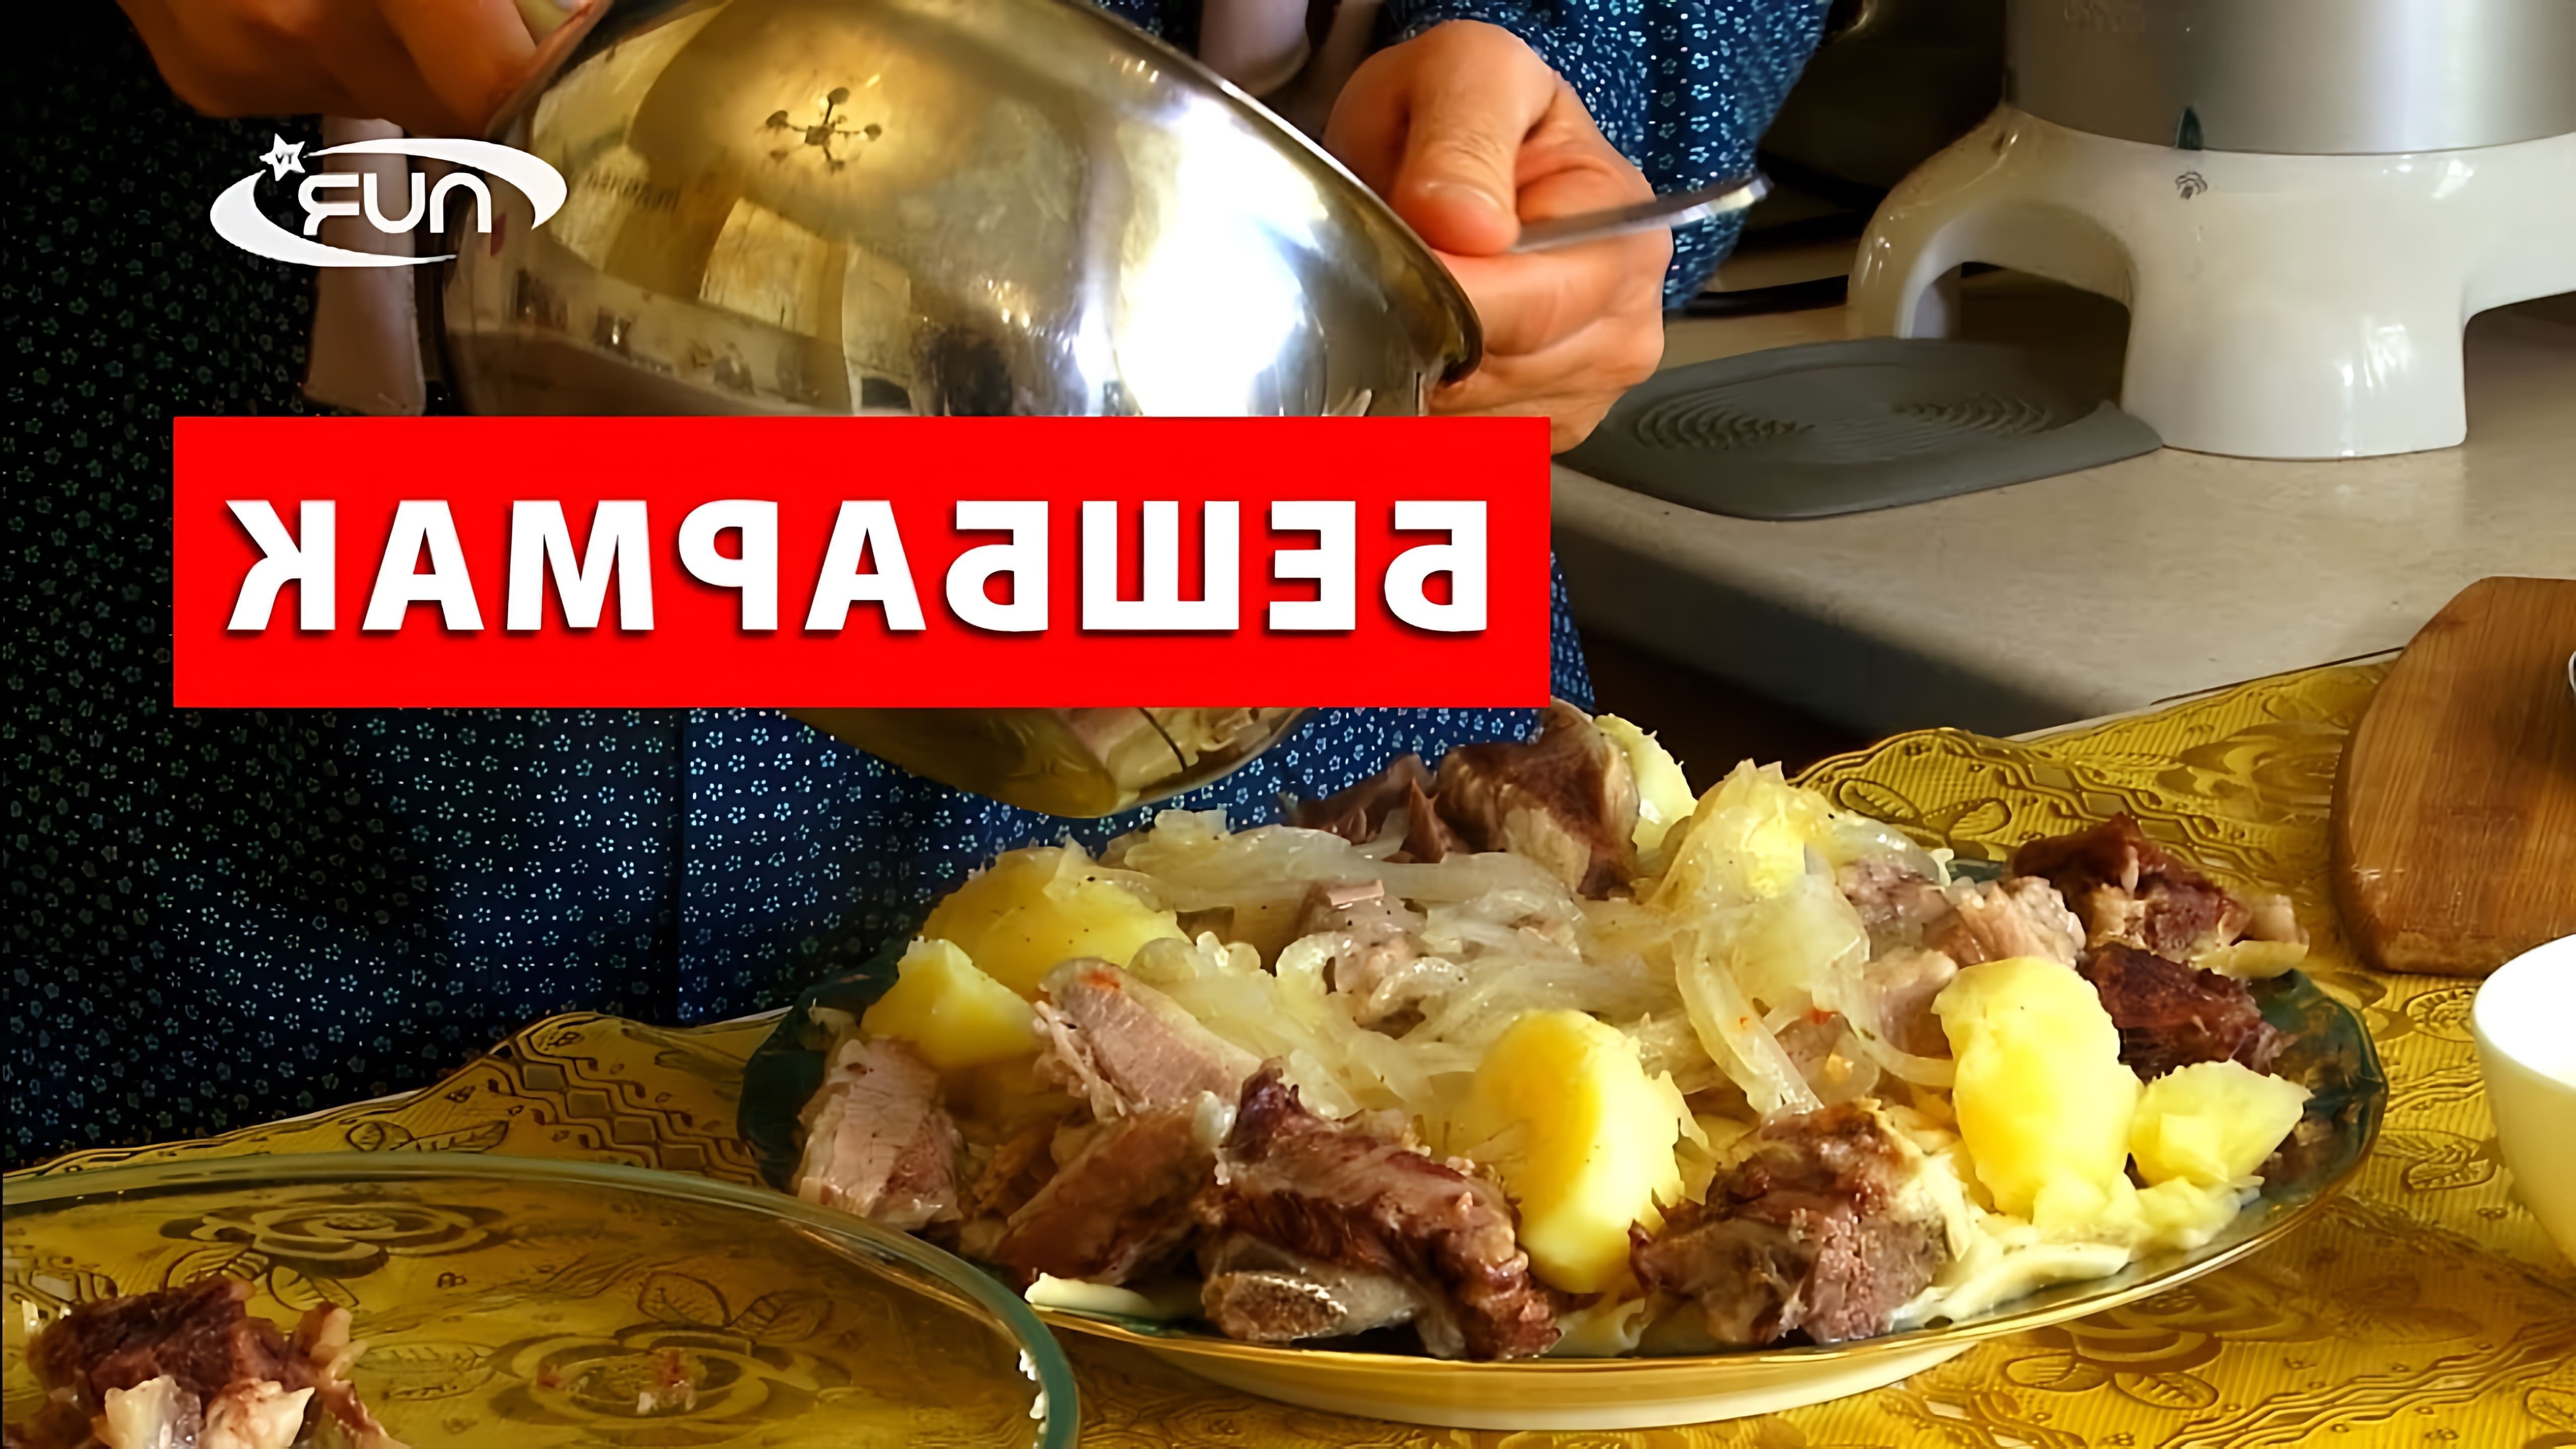 В этом видео демонстрируется процесс приготовления бешбармака, традиционного блюда казахской кухни